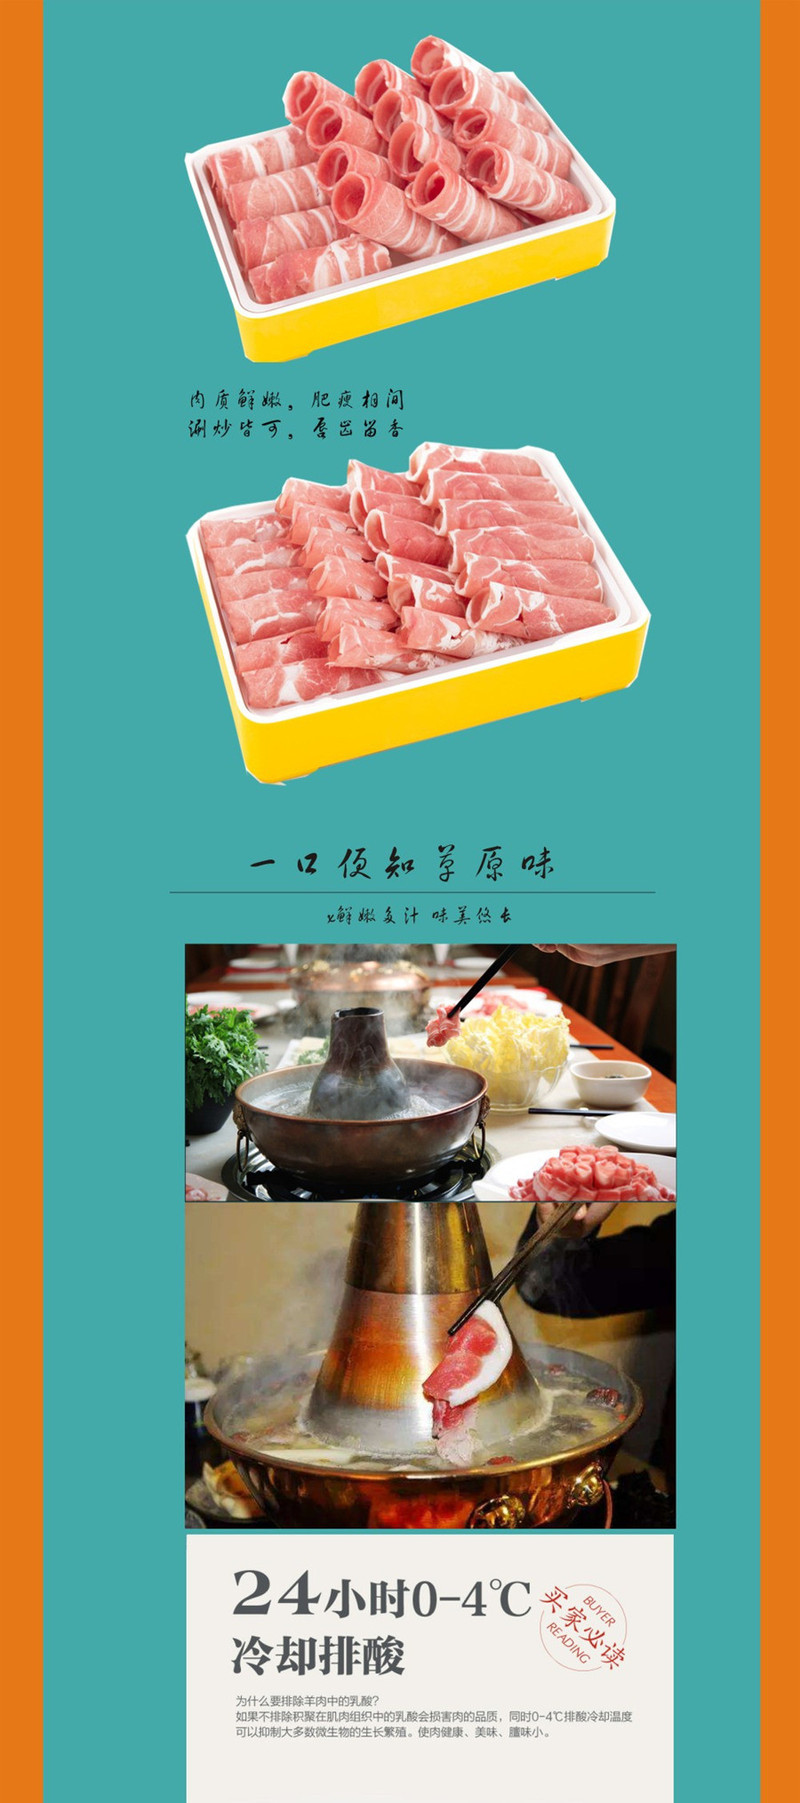 【鲜从草原来】内蒙古草原火锅羊肉8斤